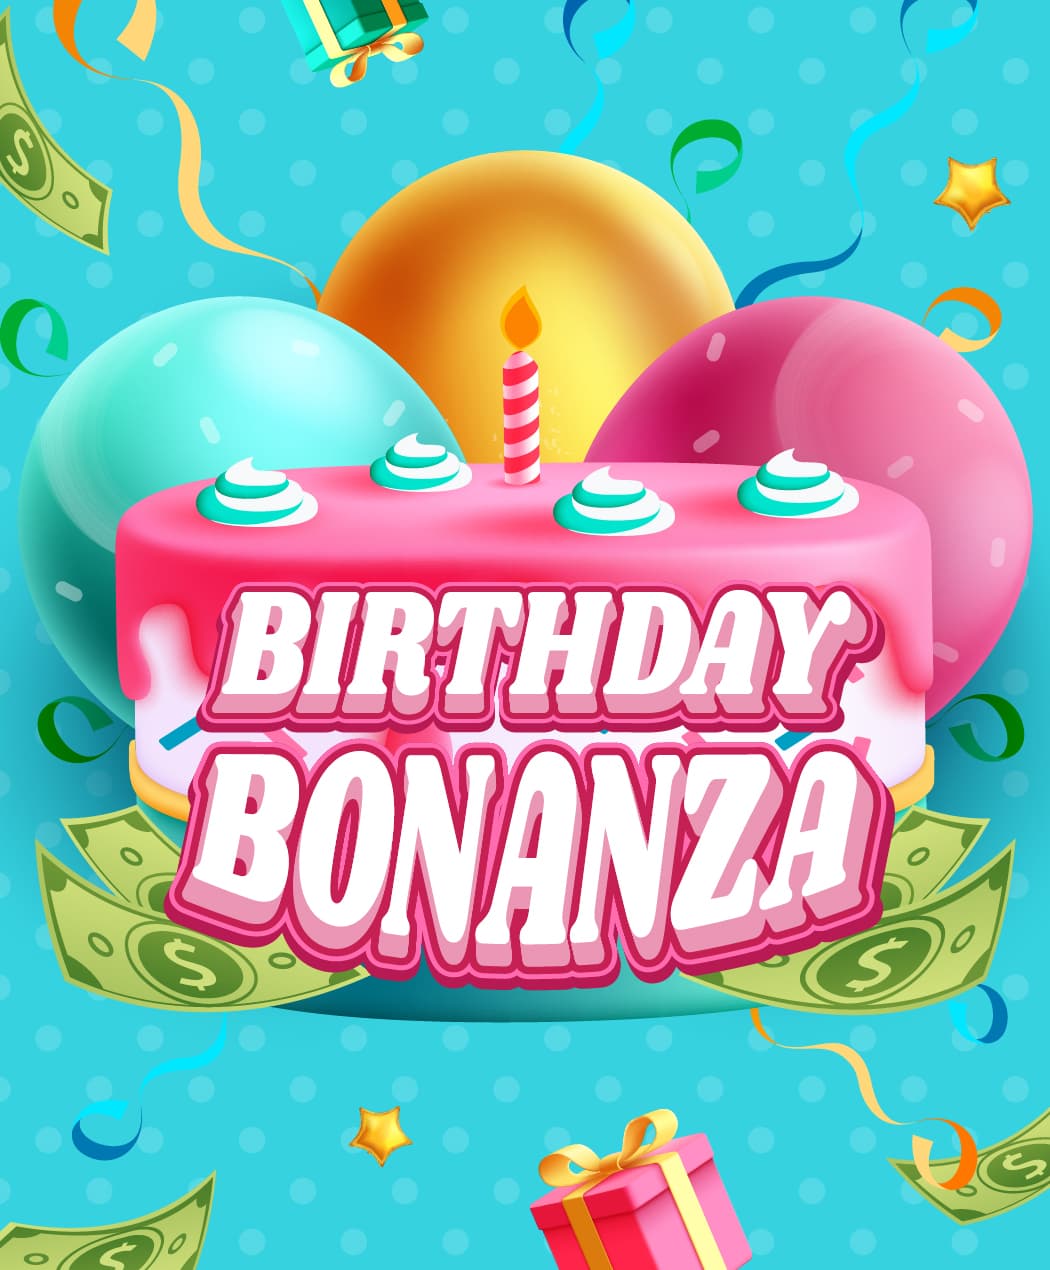 Birthday Bonanza Aug 7